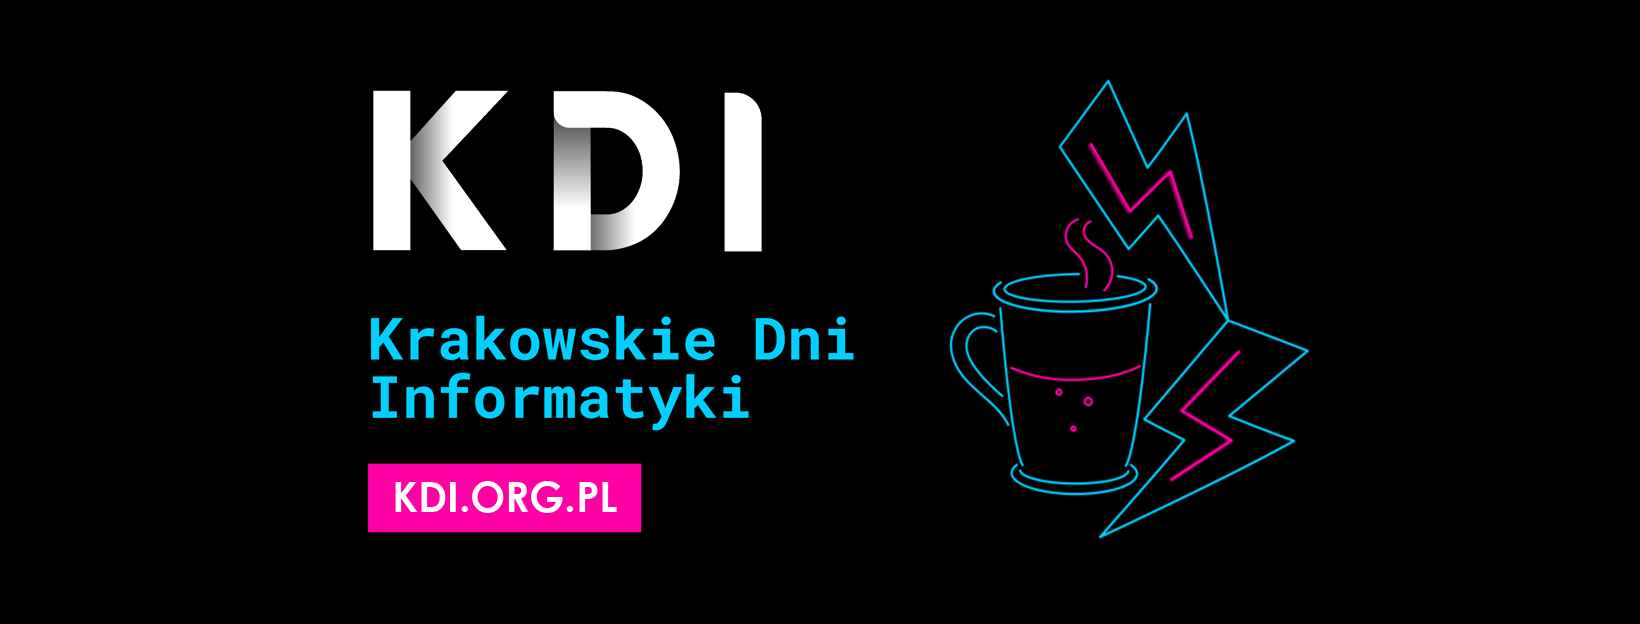 Krakowskie Dni Informatyki 2021 (online) - konferencja integrująca krakowską branżę IT